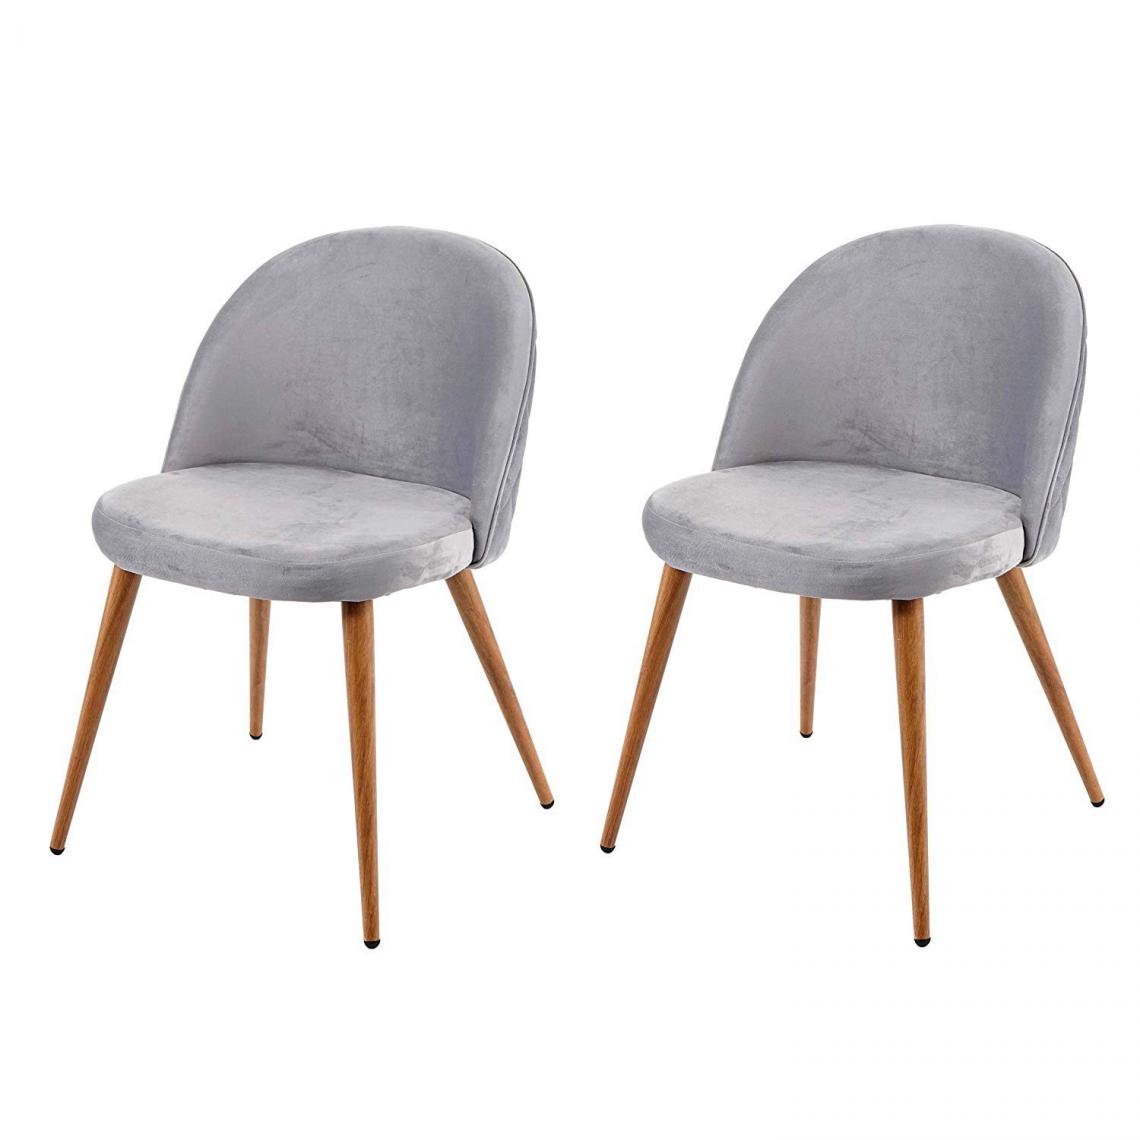 Decoshop26 - Lot de 2 chaises de salle à manger tissu velours gris clair en bois style rétro CDS04418 - Chaises